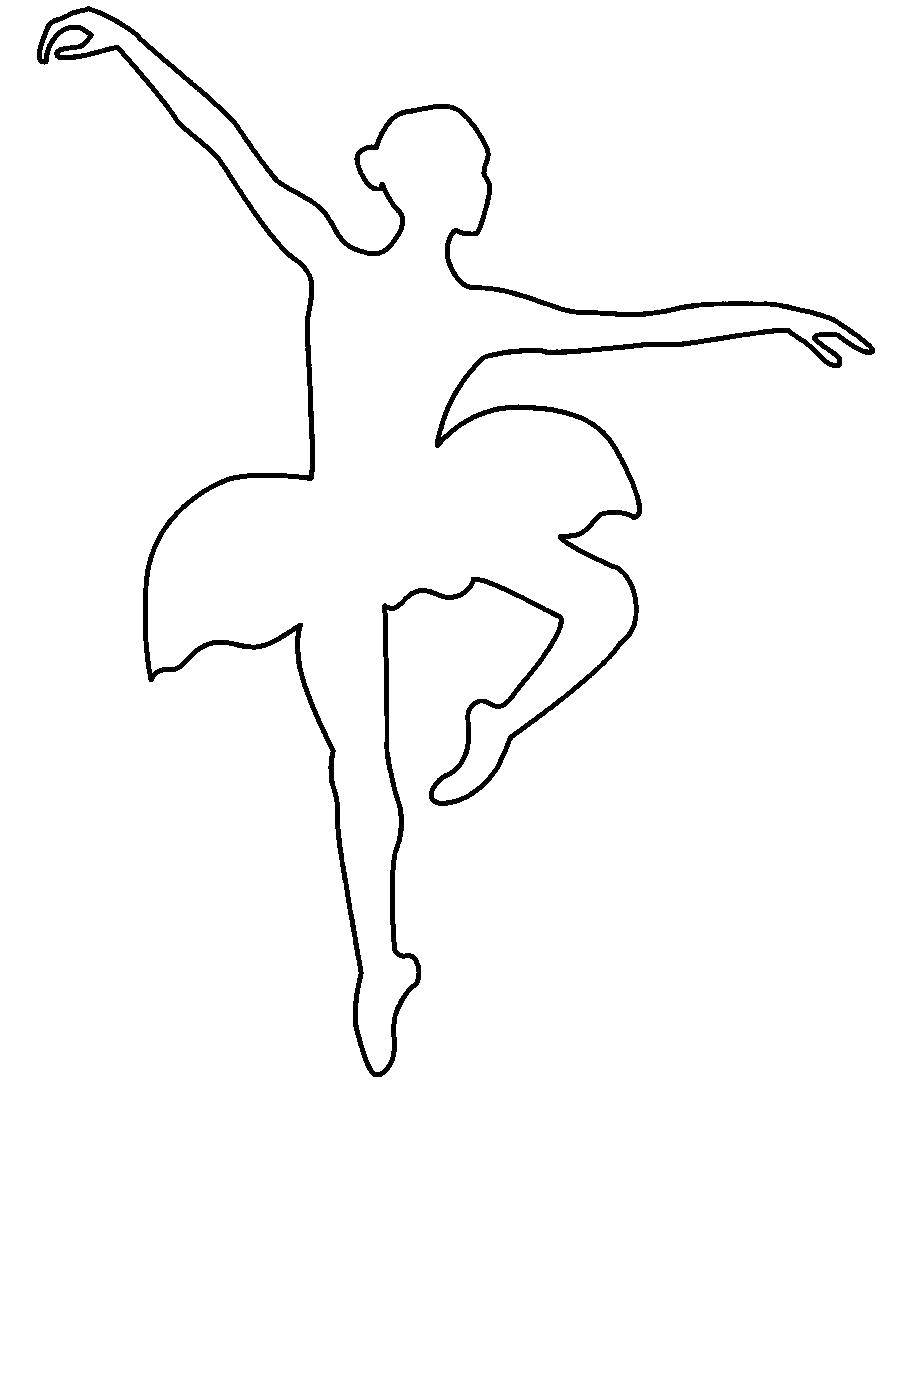  Контур балерины